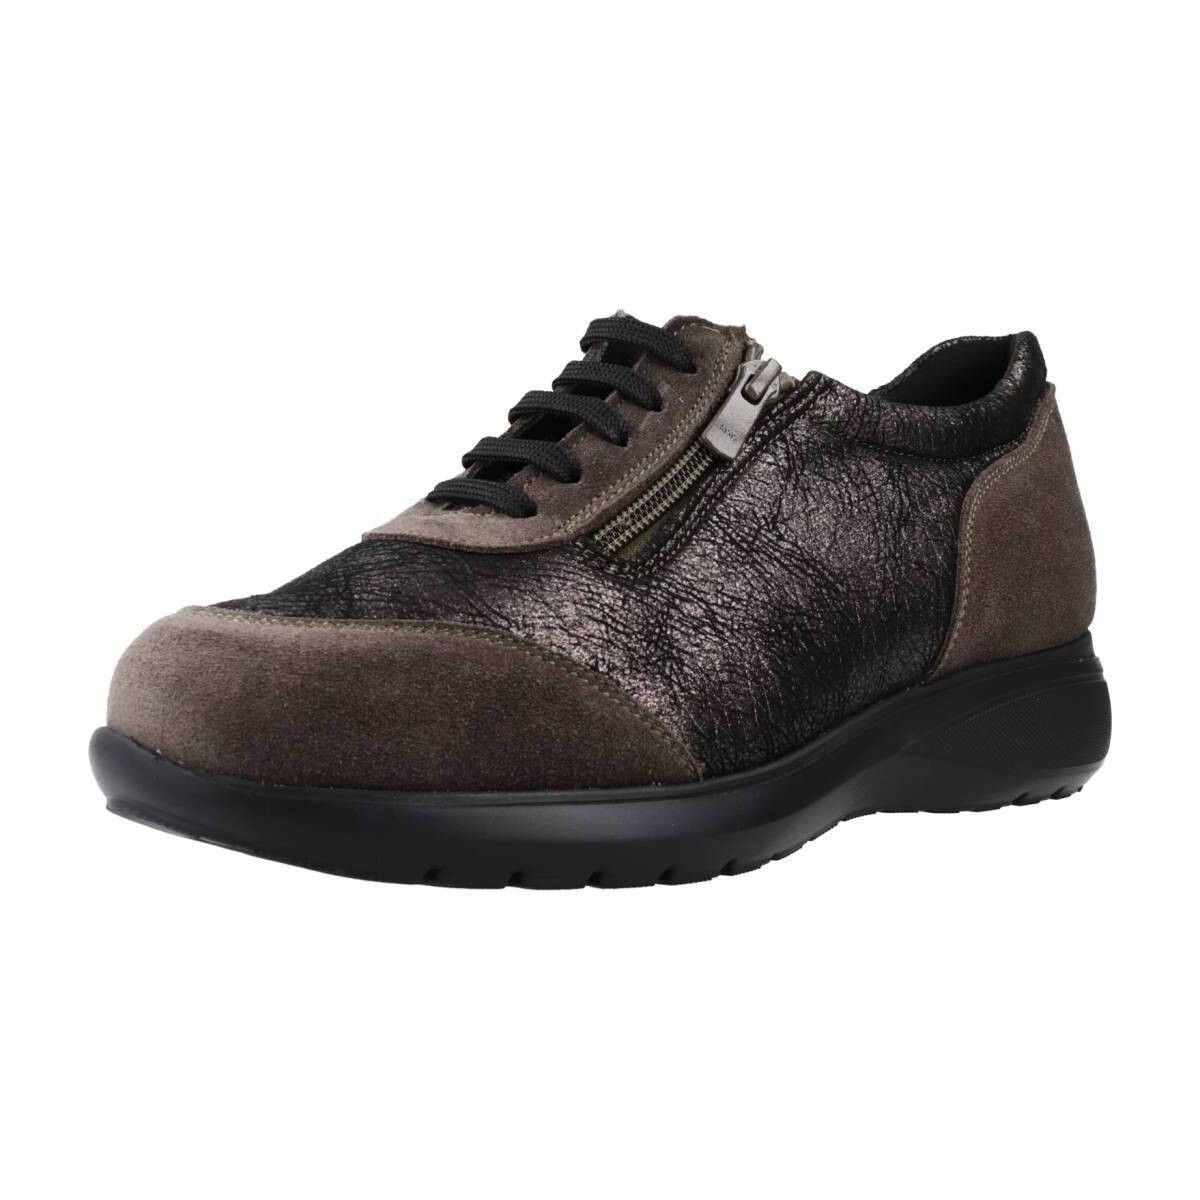 Schoenen Dames Sneakers Pinoso's 8218G Brown